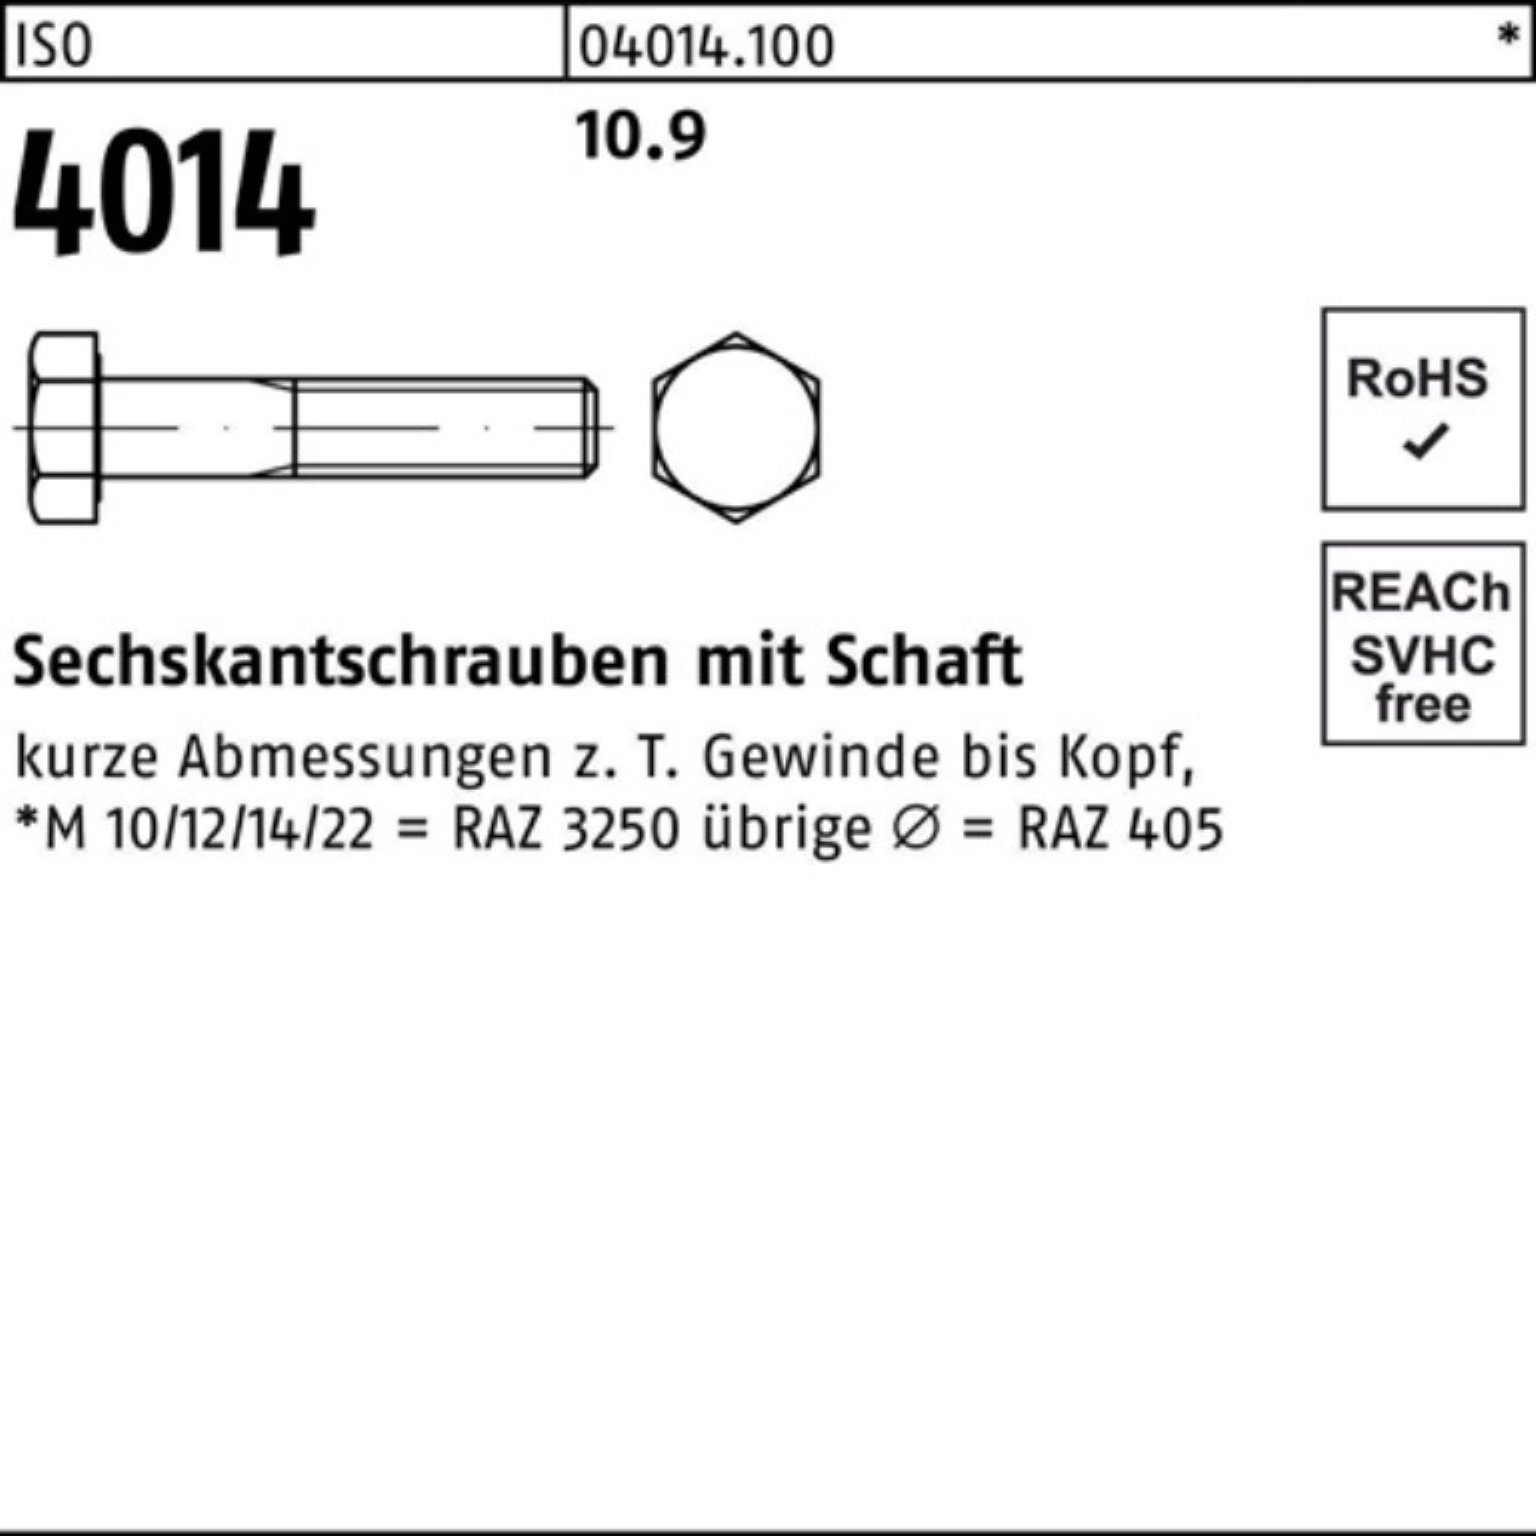 10.9 Bufab ISO Sechskantschraube I Stück Sechskantschraube 4014 Schaft 100er 220 M22x 10 Pack